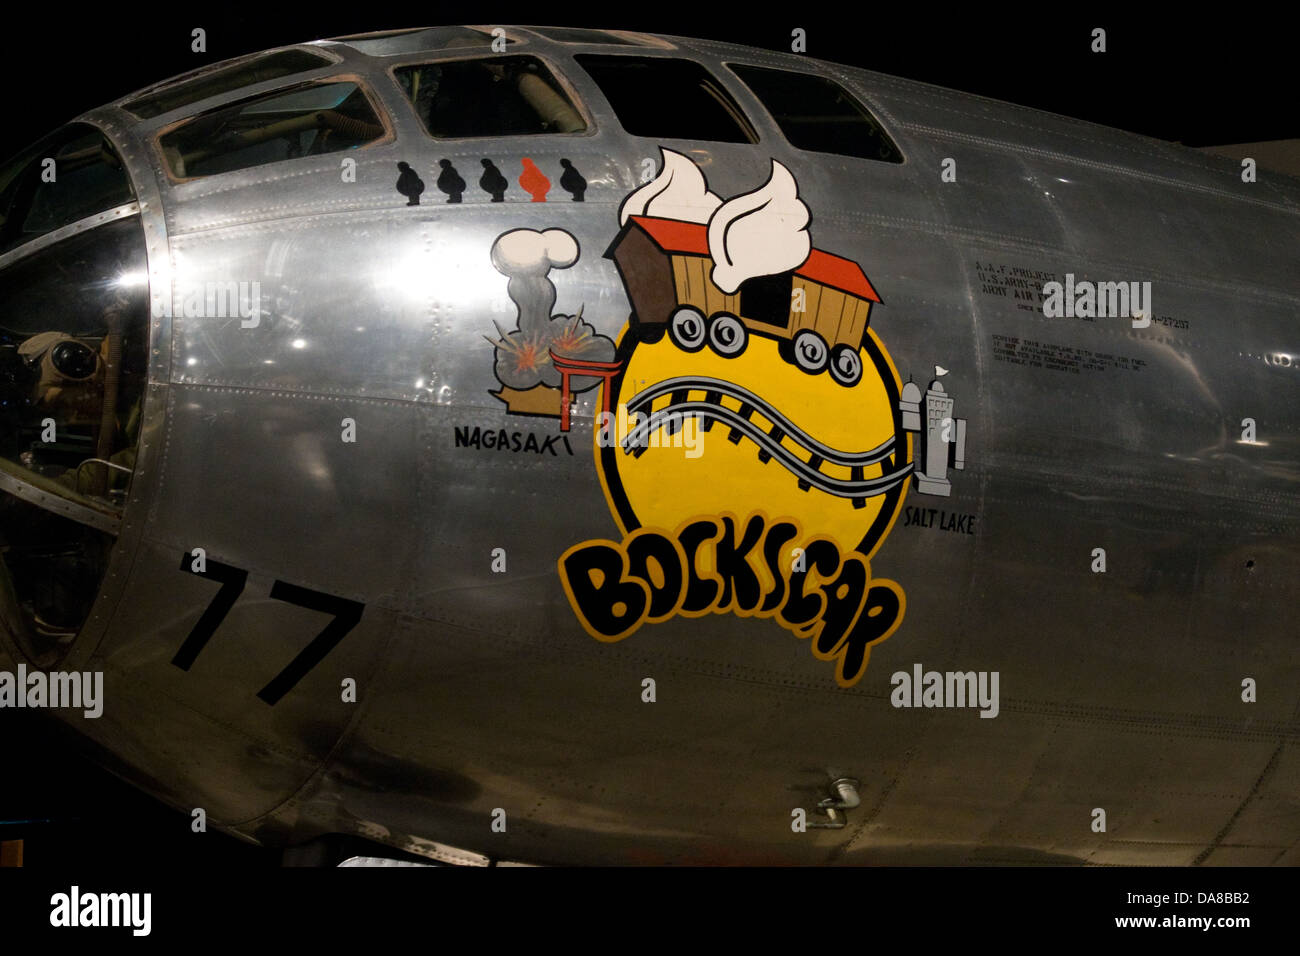 Nose art de Bocks la voiture B29 Superfortress Bombardier atomique au musée de l'USAF Wright-Patterson Air Force Base Dayton Ohio OH USA Banque D'Images